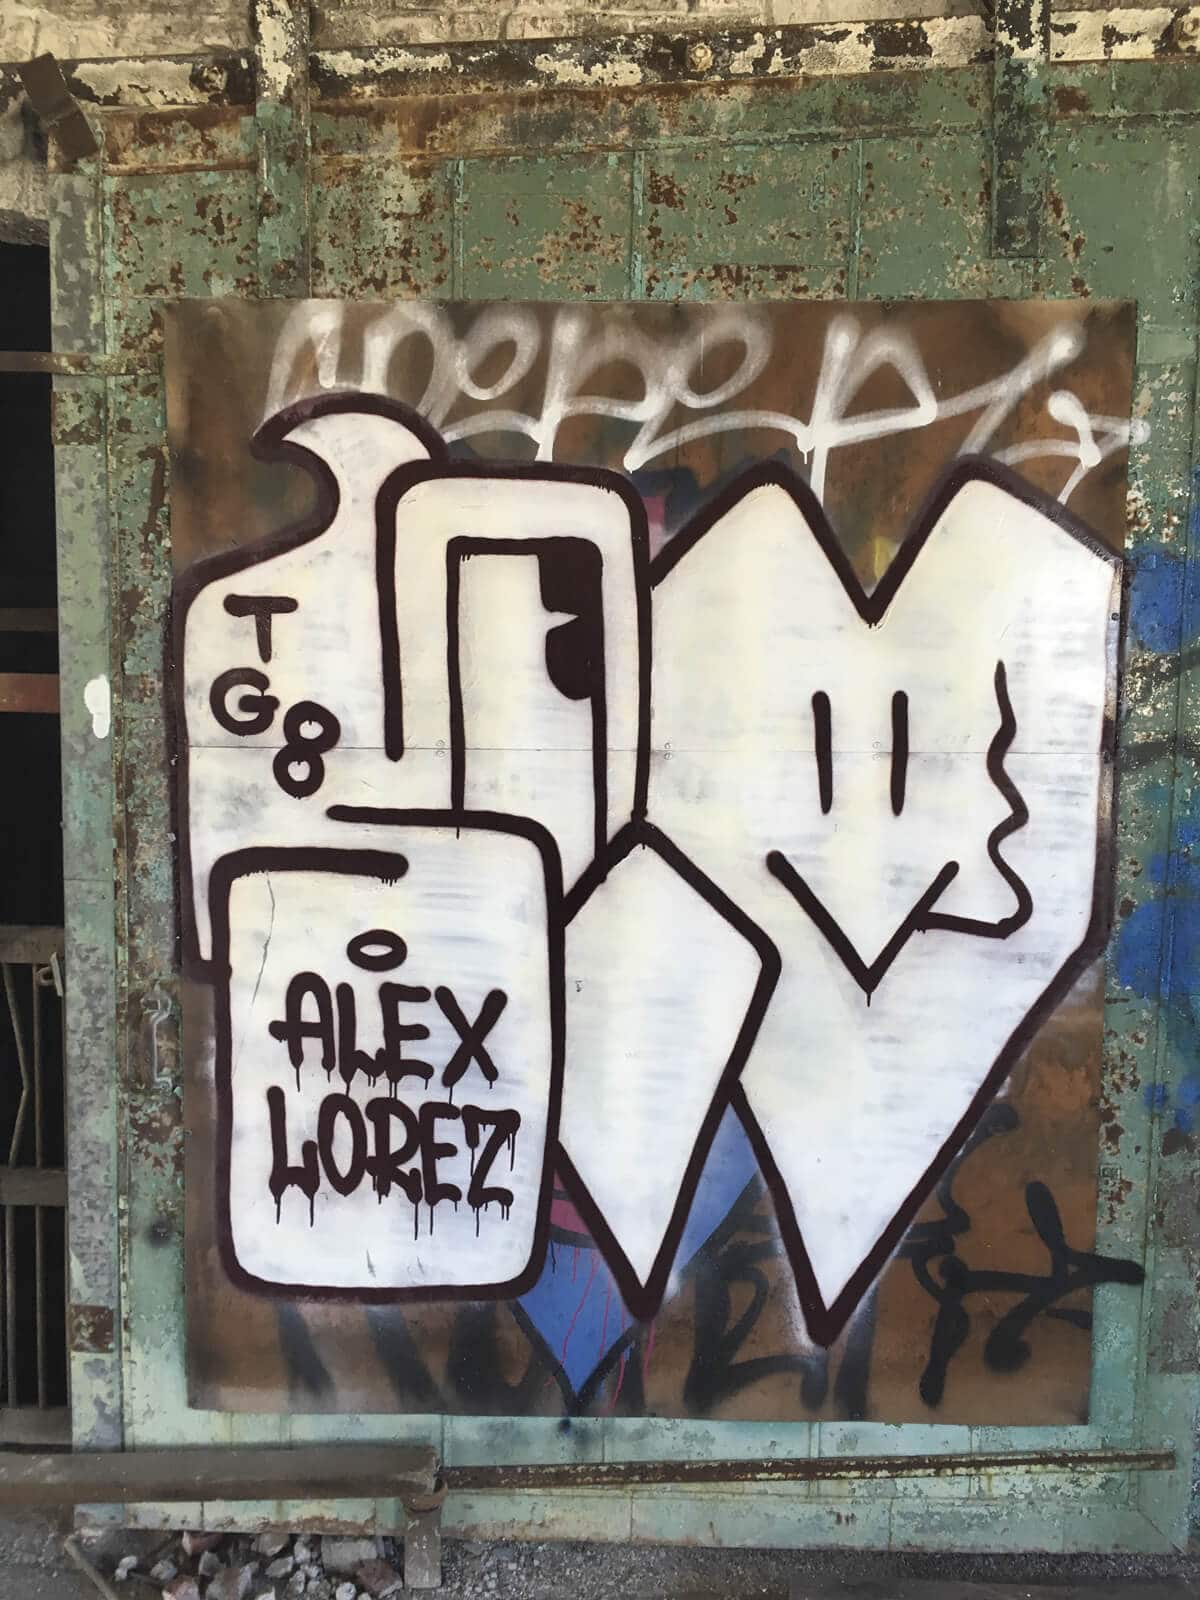 ROACHI throw up street bombing graffiti Brooklyn New York ARTILLERY interview